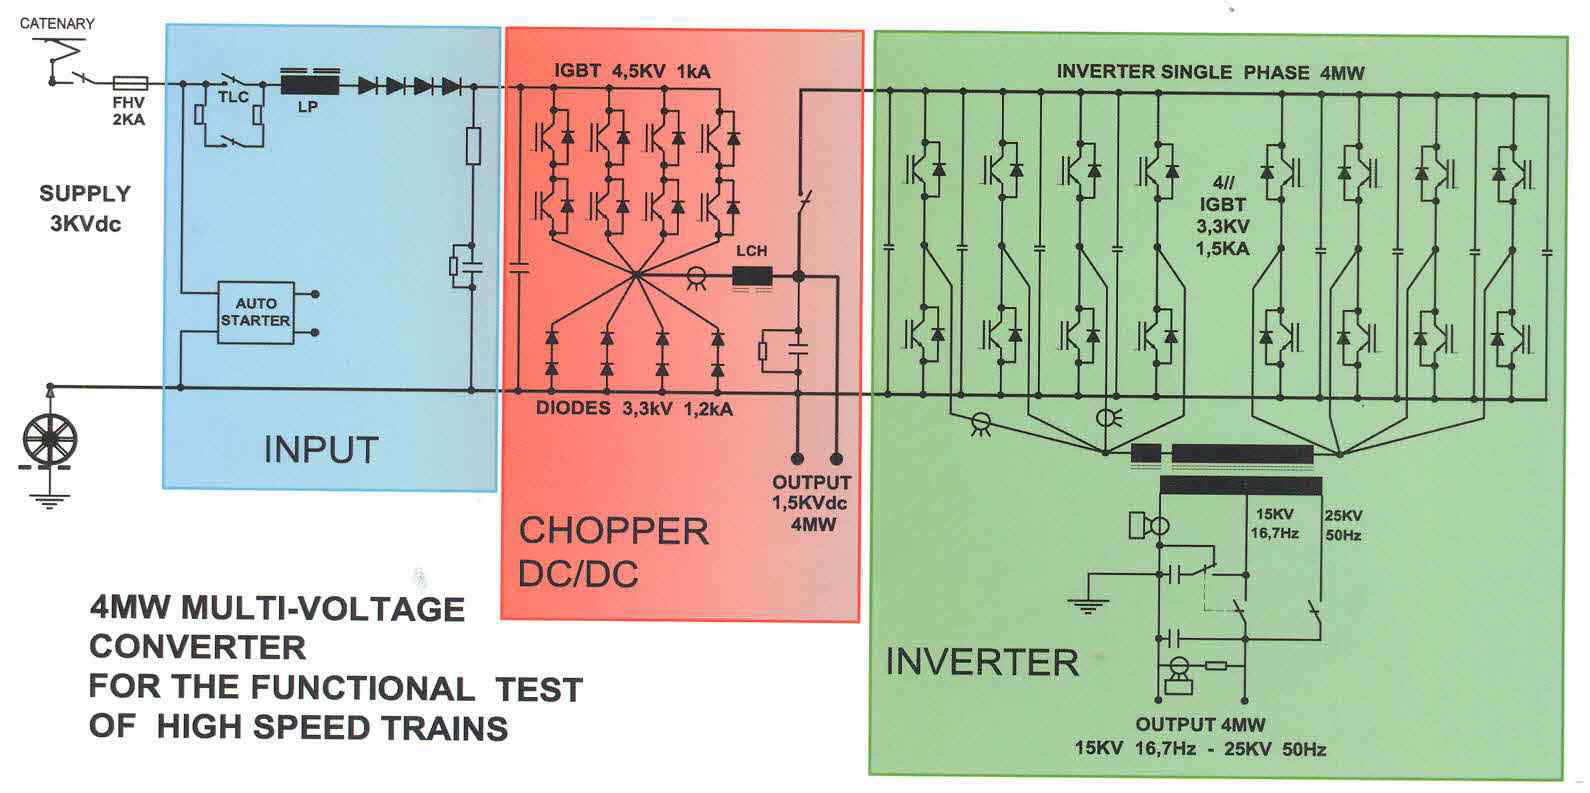 그림 3.1.74 고속 열차의 기능 실험을 위한 4MW 다중화 전압 컨버터